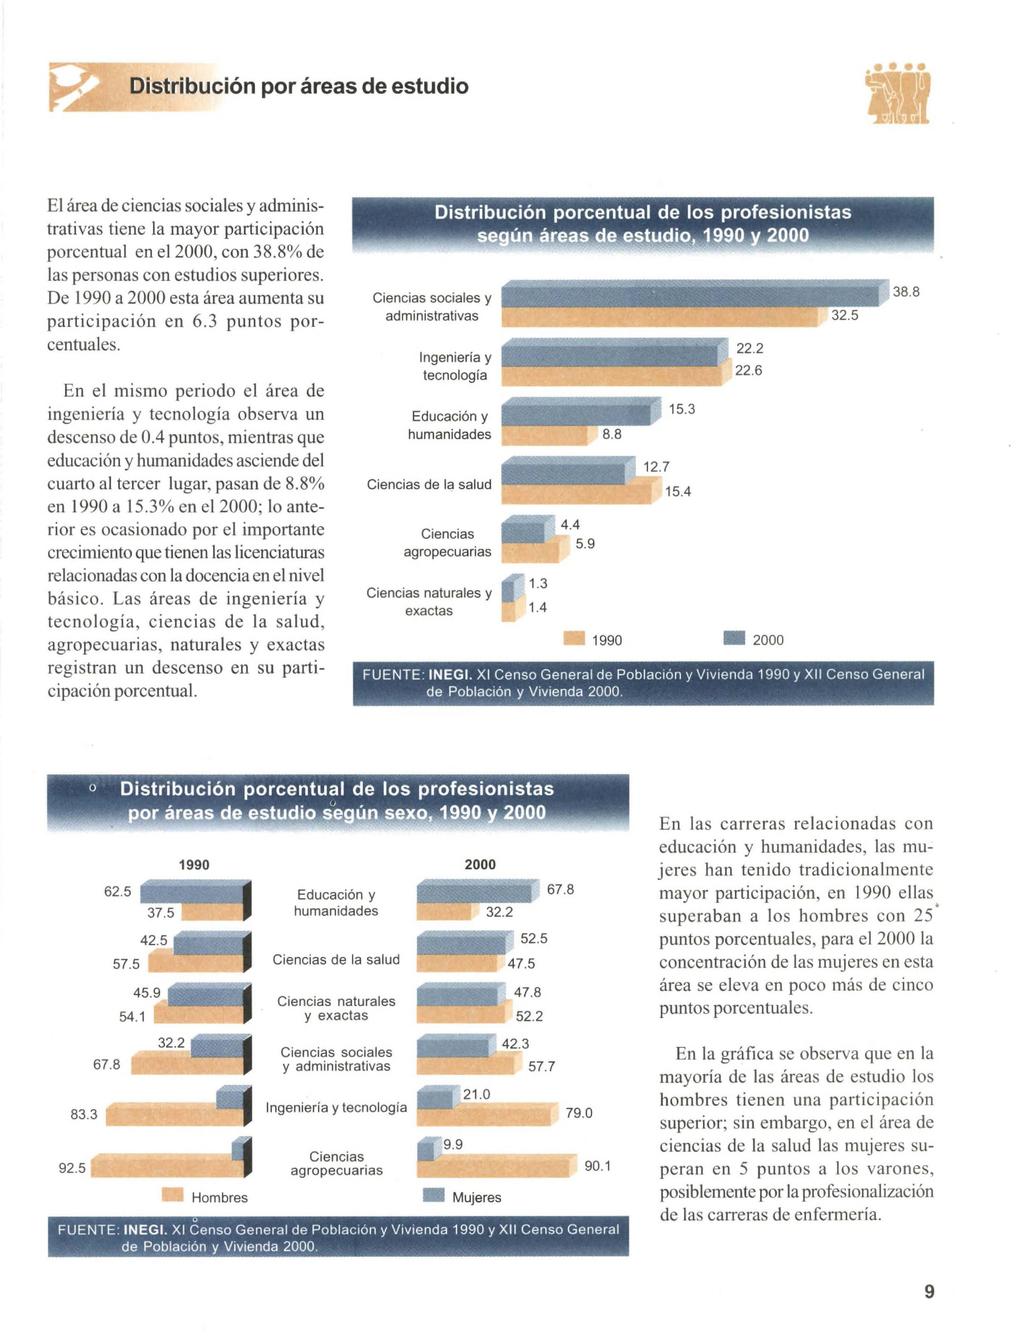 Distribucion por areas de estudio dm El area de ciencias sociales y adminis- trativas tiene la mayor participacion porcentual en el 2000, con 38.8% de las personas con estudios superiores.